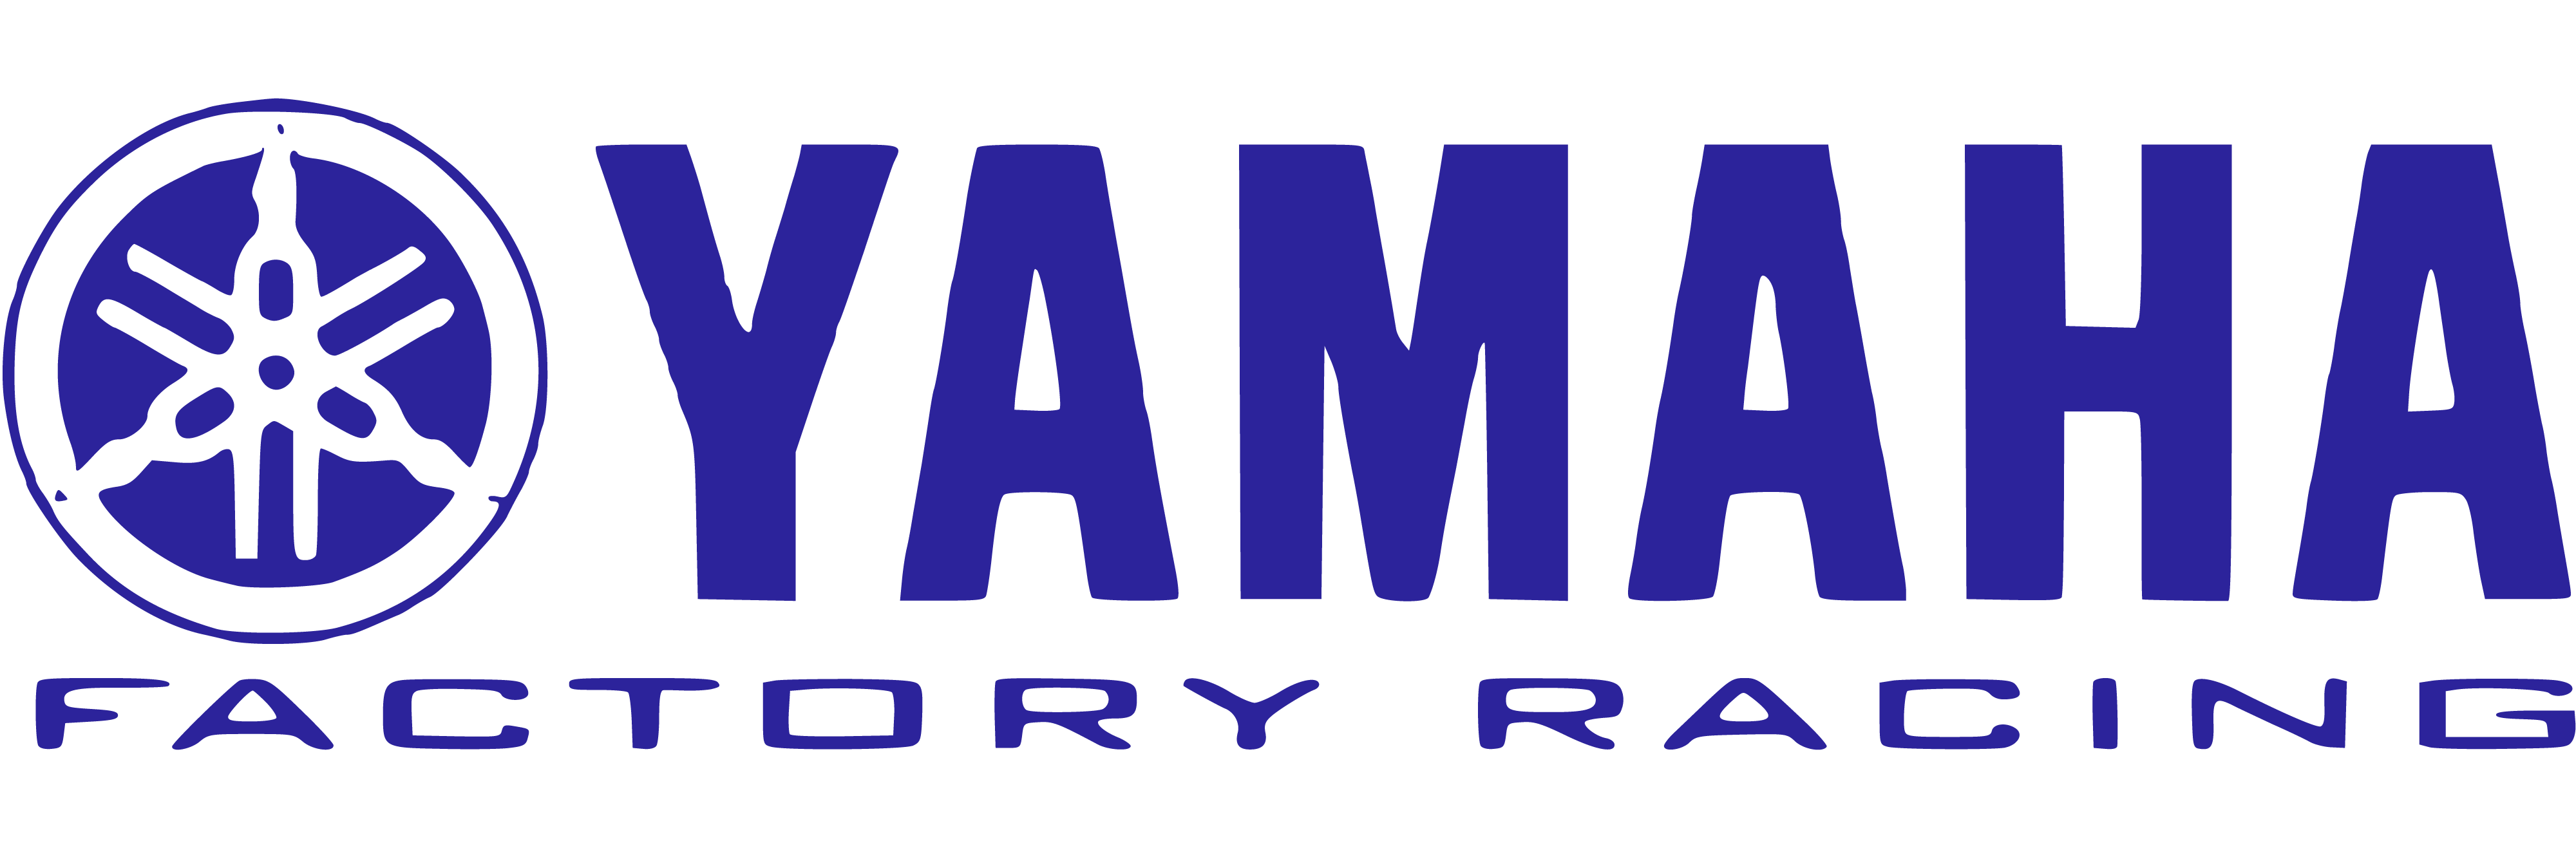 Yamaha-Factory-Racing-logo-big